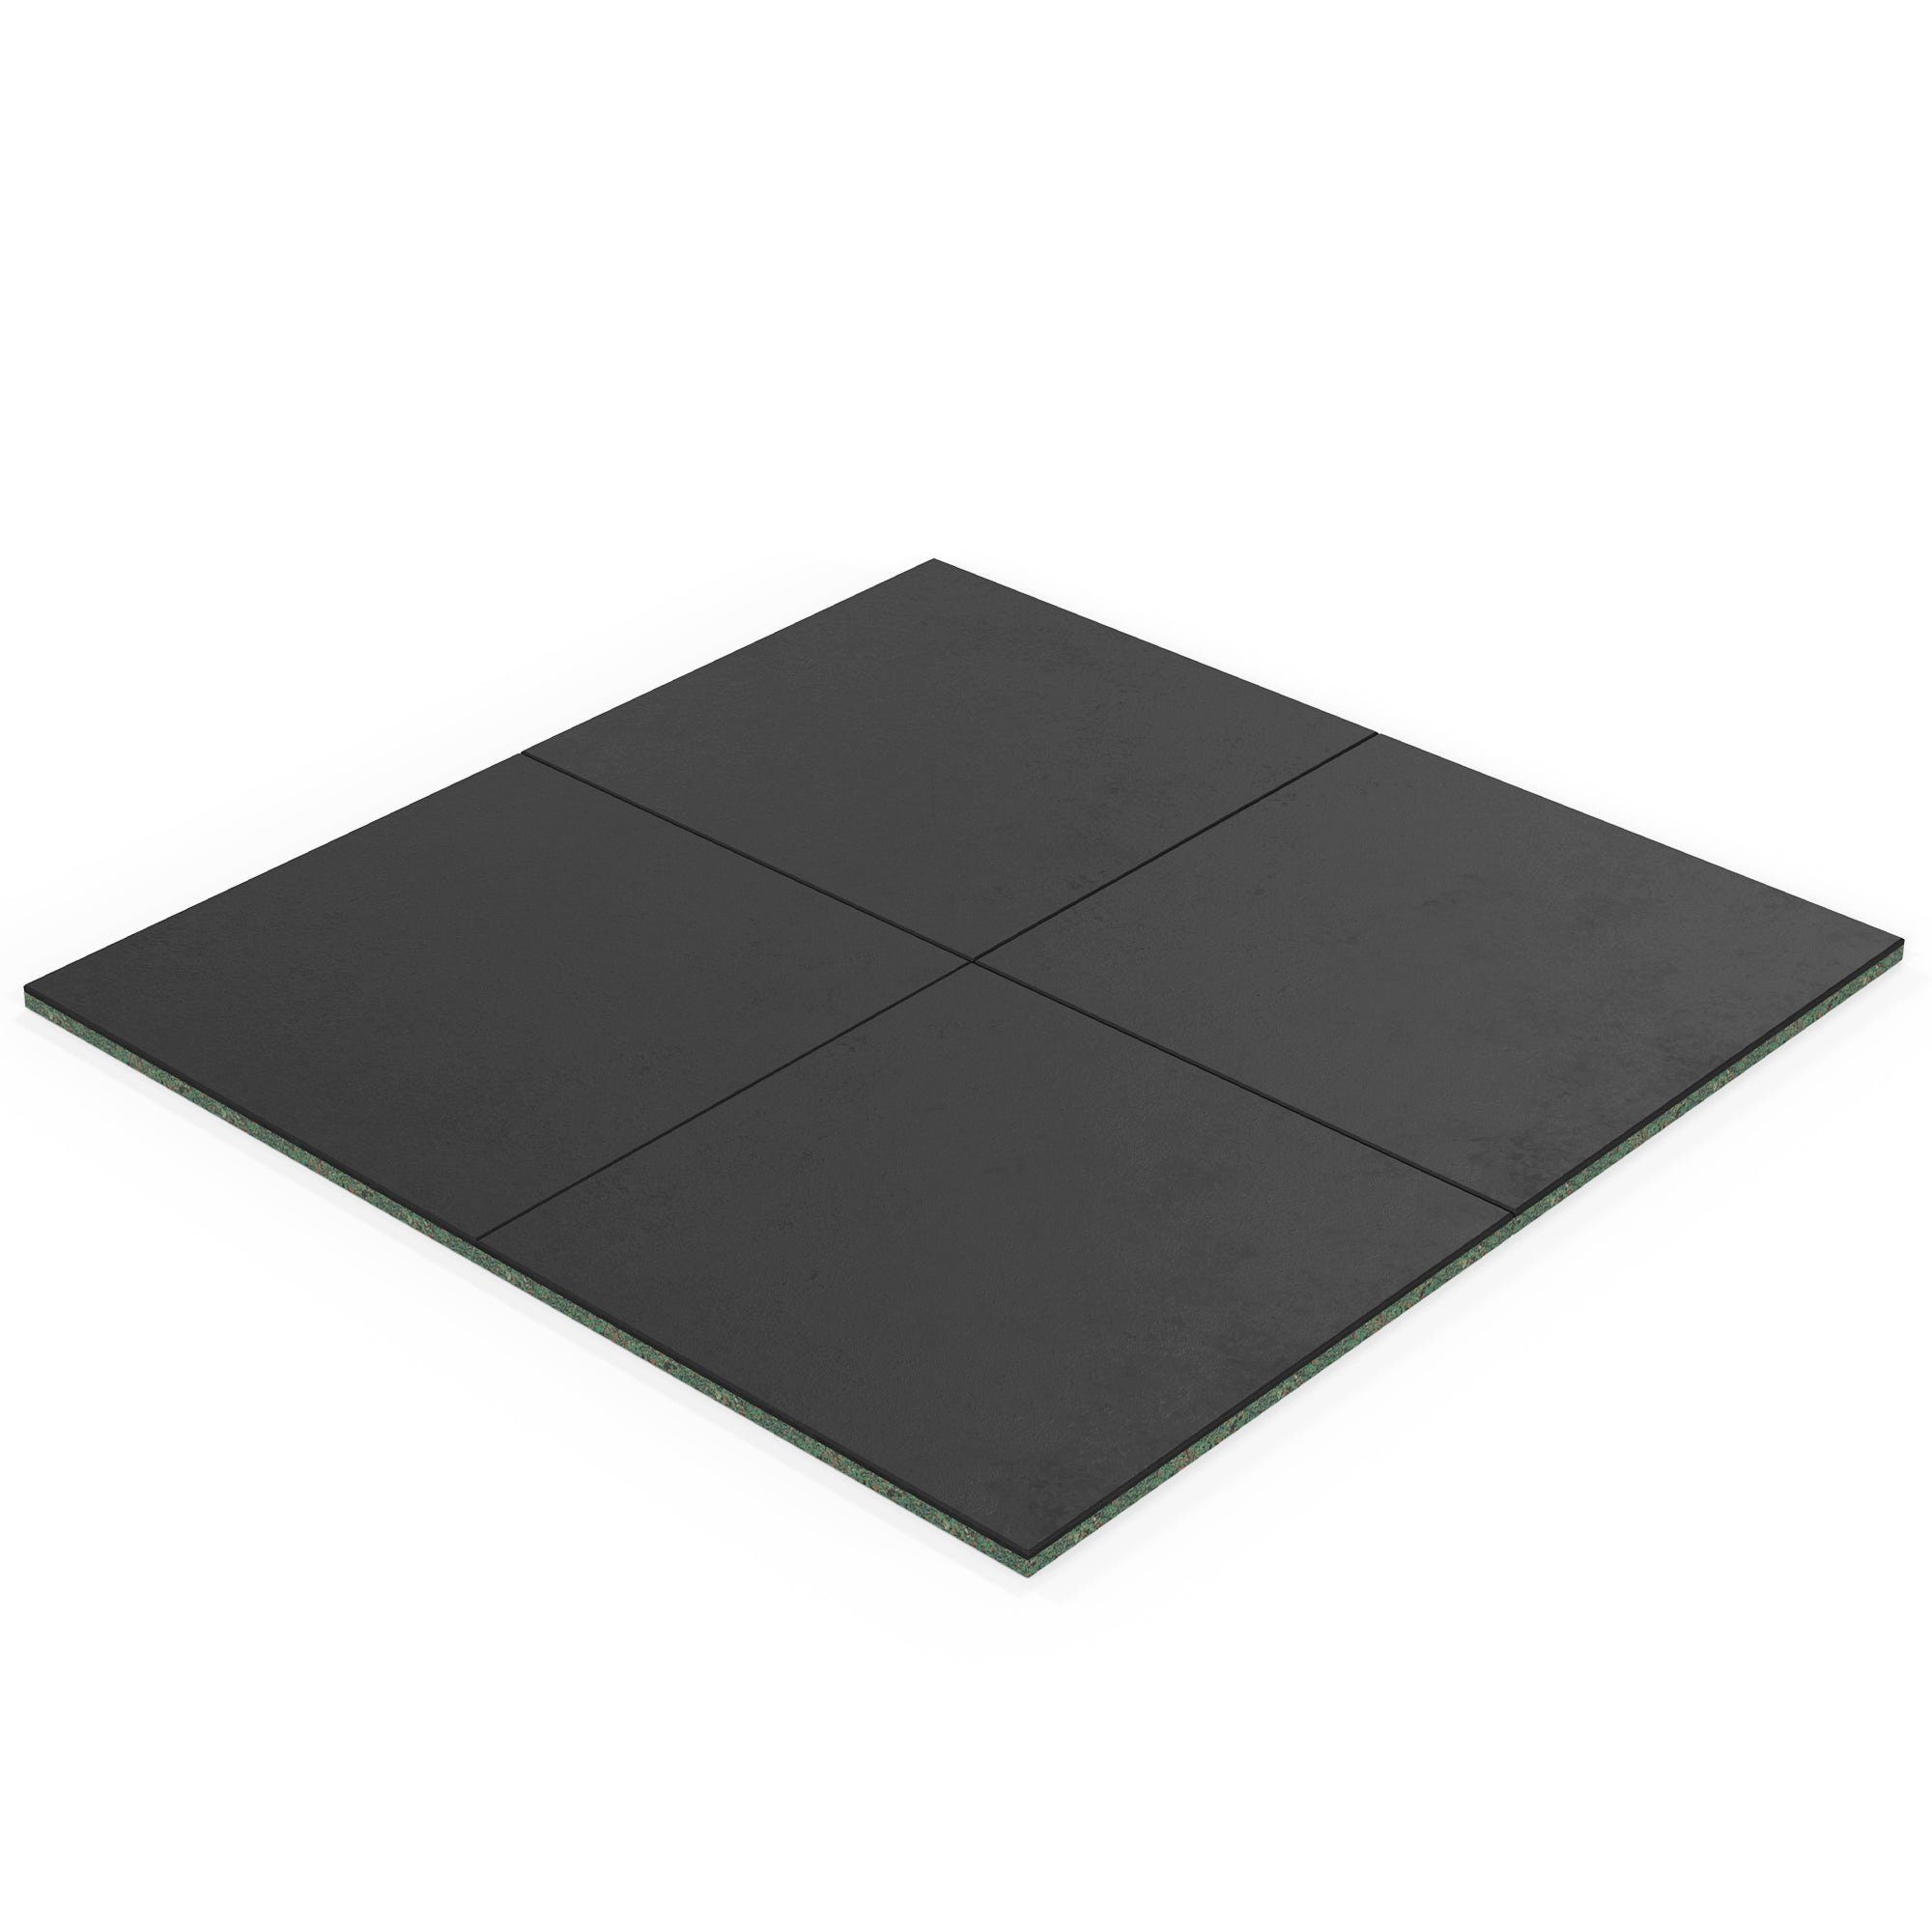 ATLETICA Bodenmatte, 2m2 SolidProtect Bodenschutzmatten 20 mm, Keltan EPDM Material